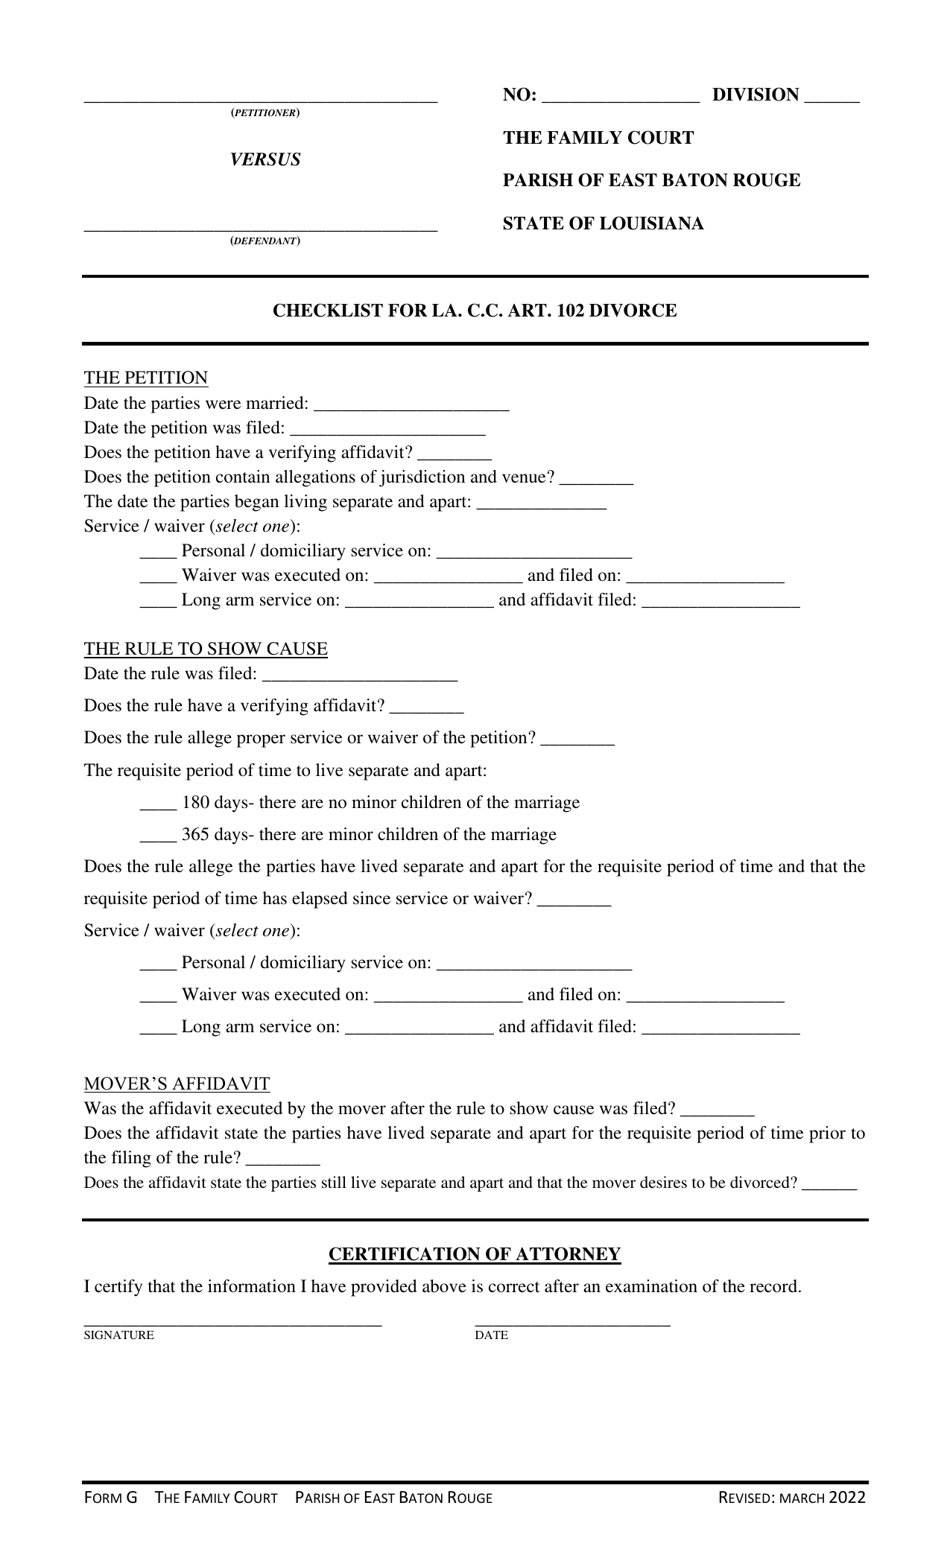 Form G Checklist for La. C.c. Art. 102 Divorce - Parish of East Baton Rouge, Louisiana, Page 1